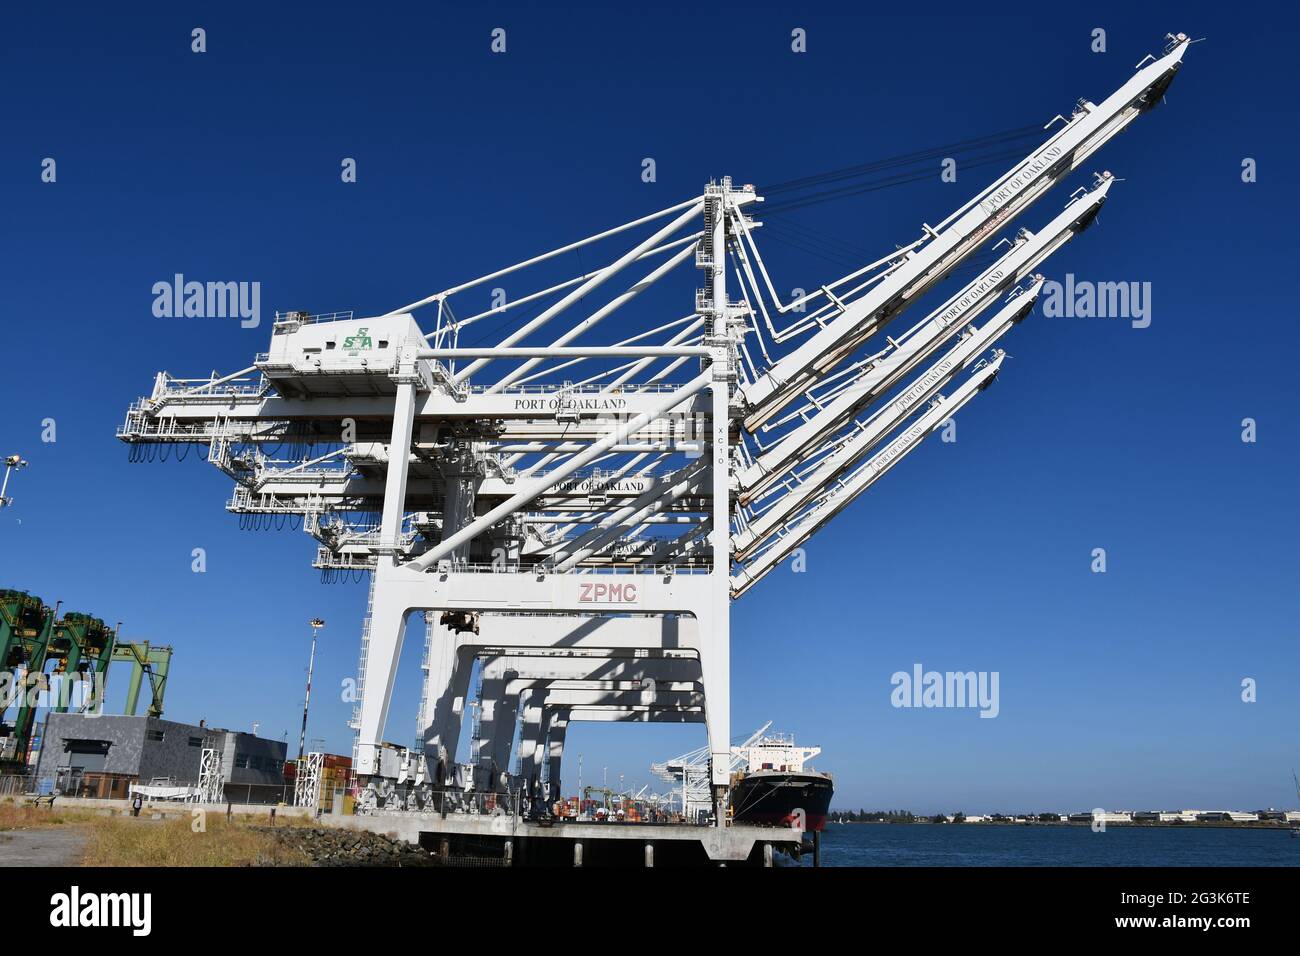 Im Hafen von Oakland, Kalifornien, einem der verkehrsreichsten globalen Güterhäfen an der Westküste, werden Container auf Schiffe verladen. Stockfoto